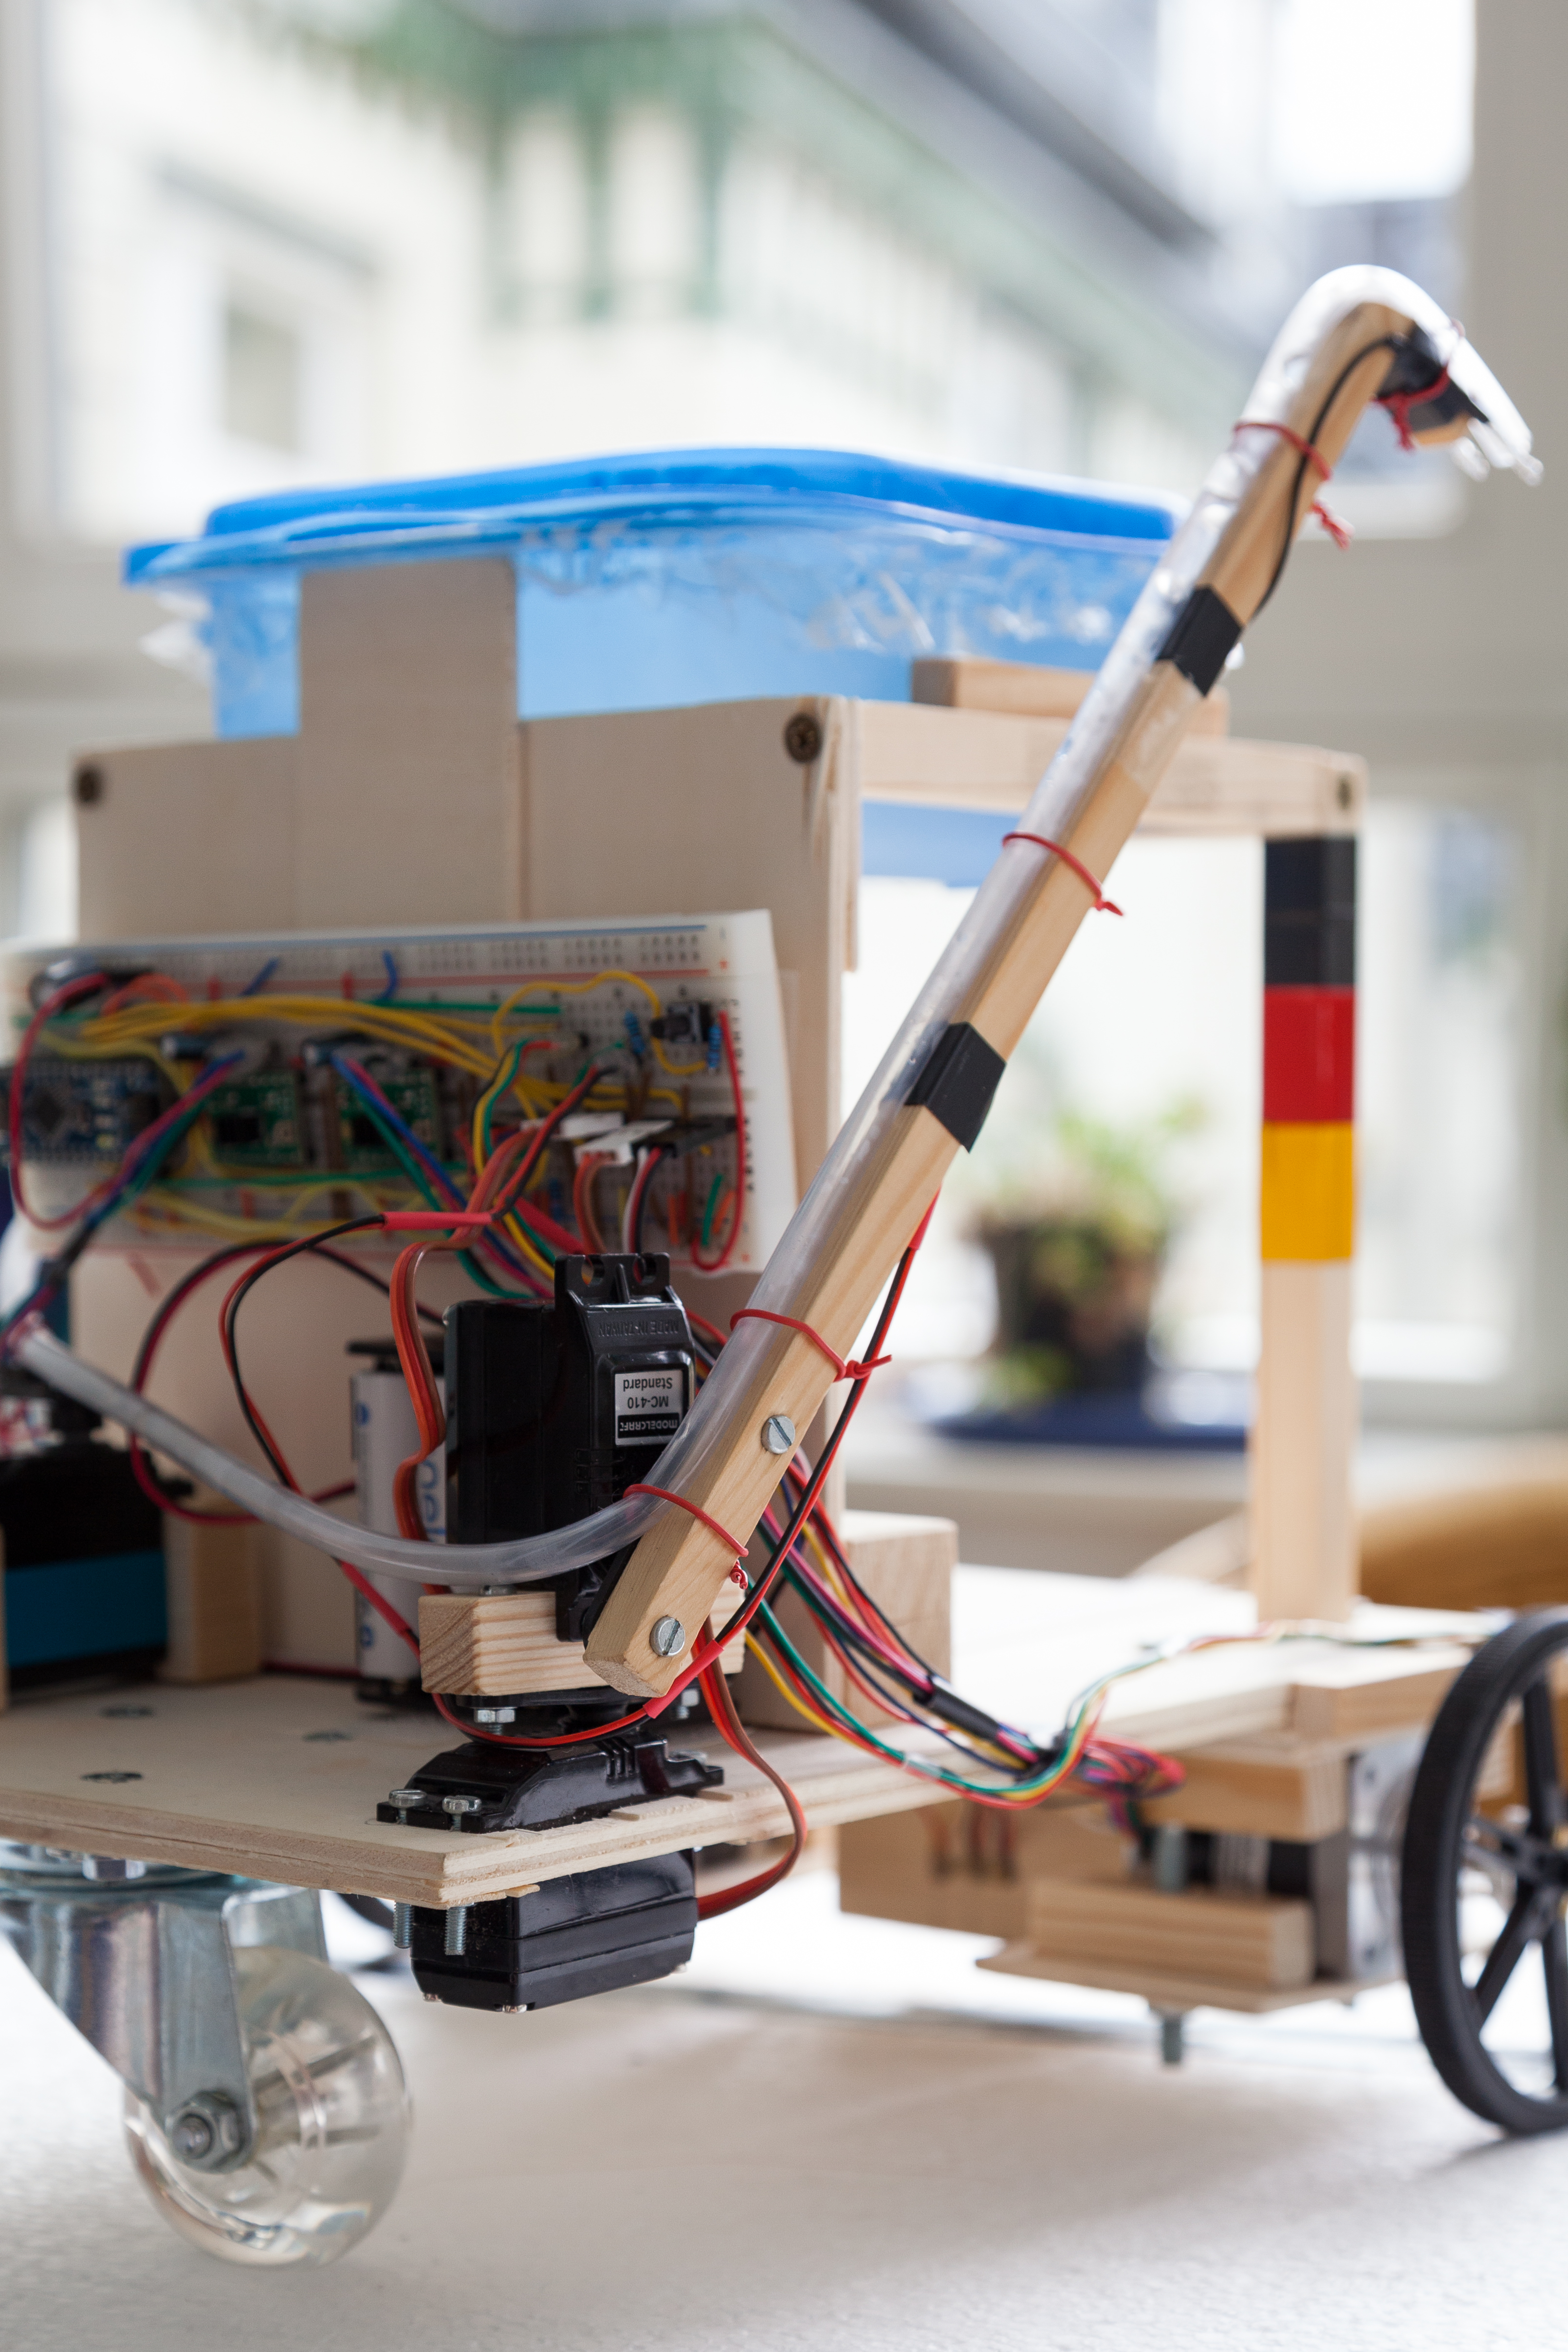 projekte2014:schnaps-runden-roboter:projektdokumentation:img_2767.jpg